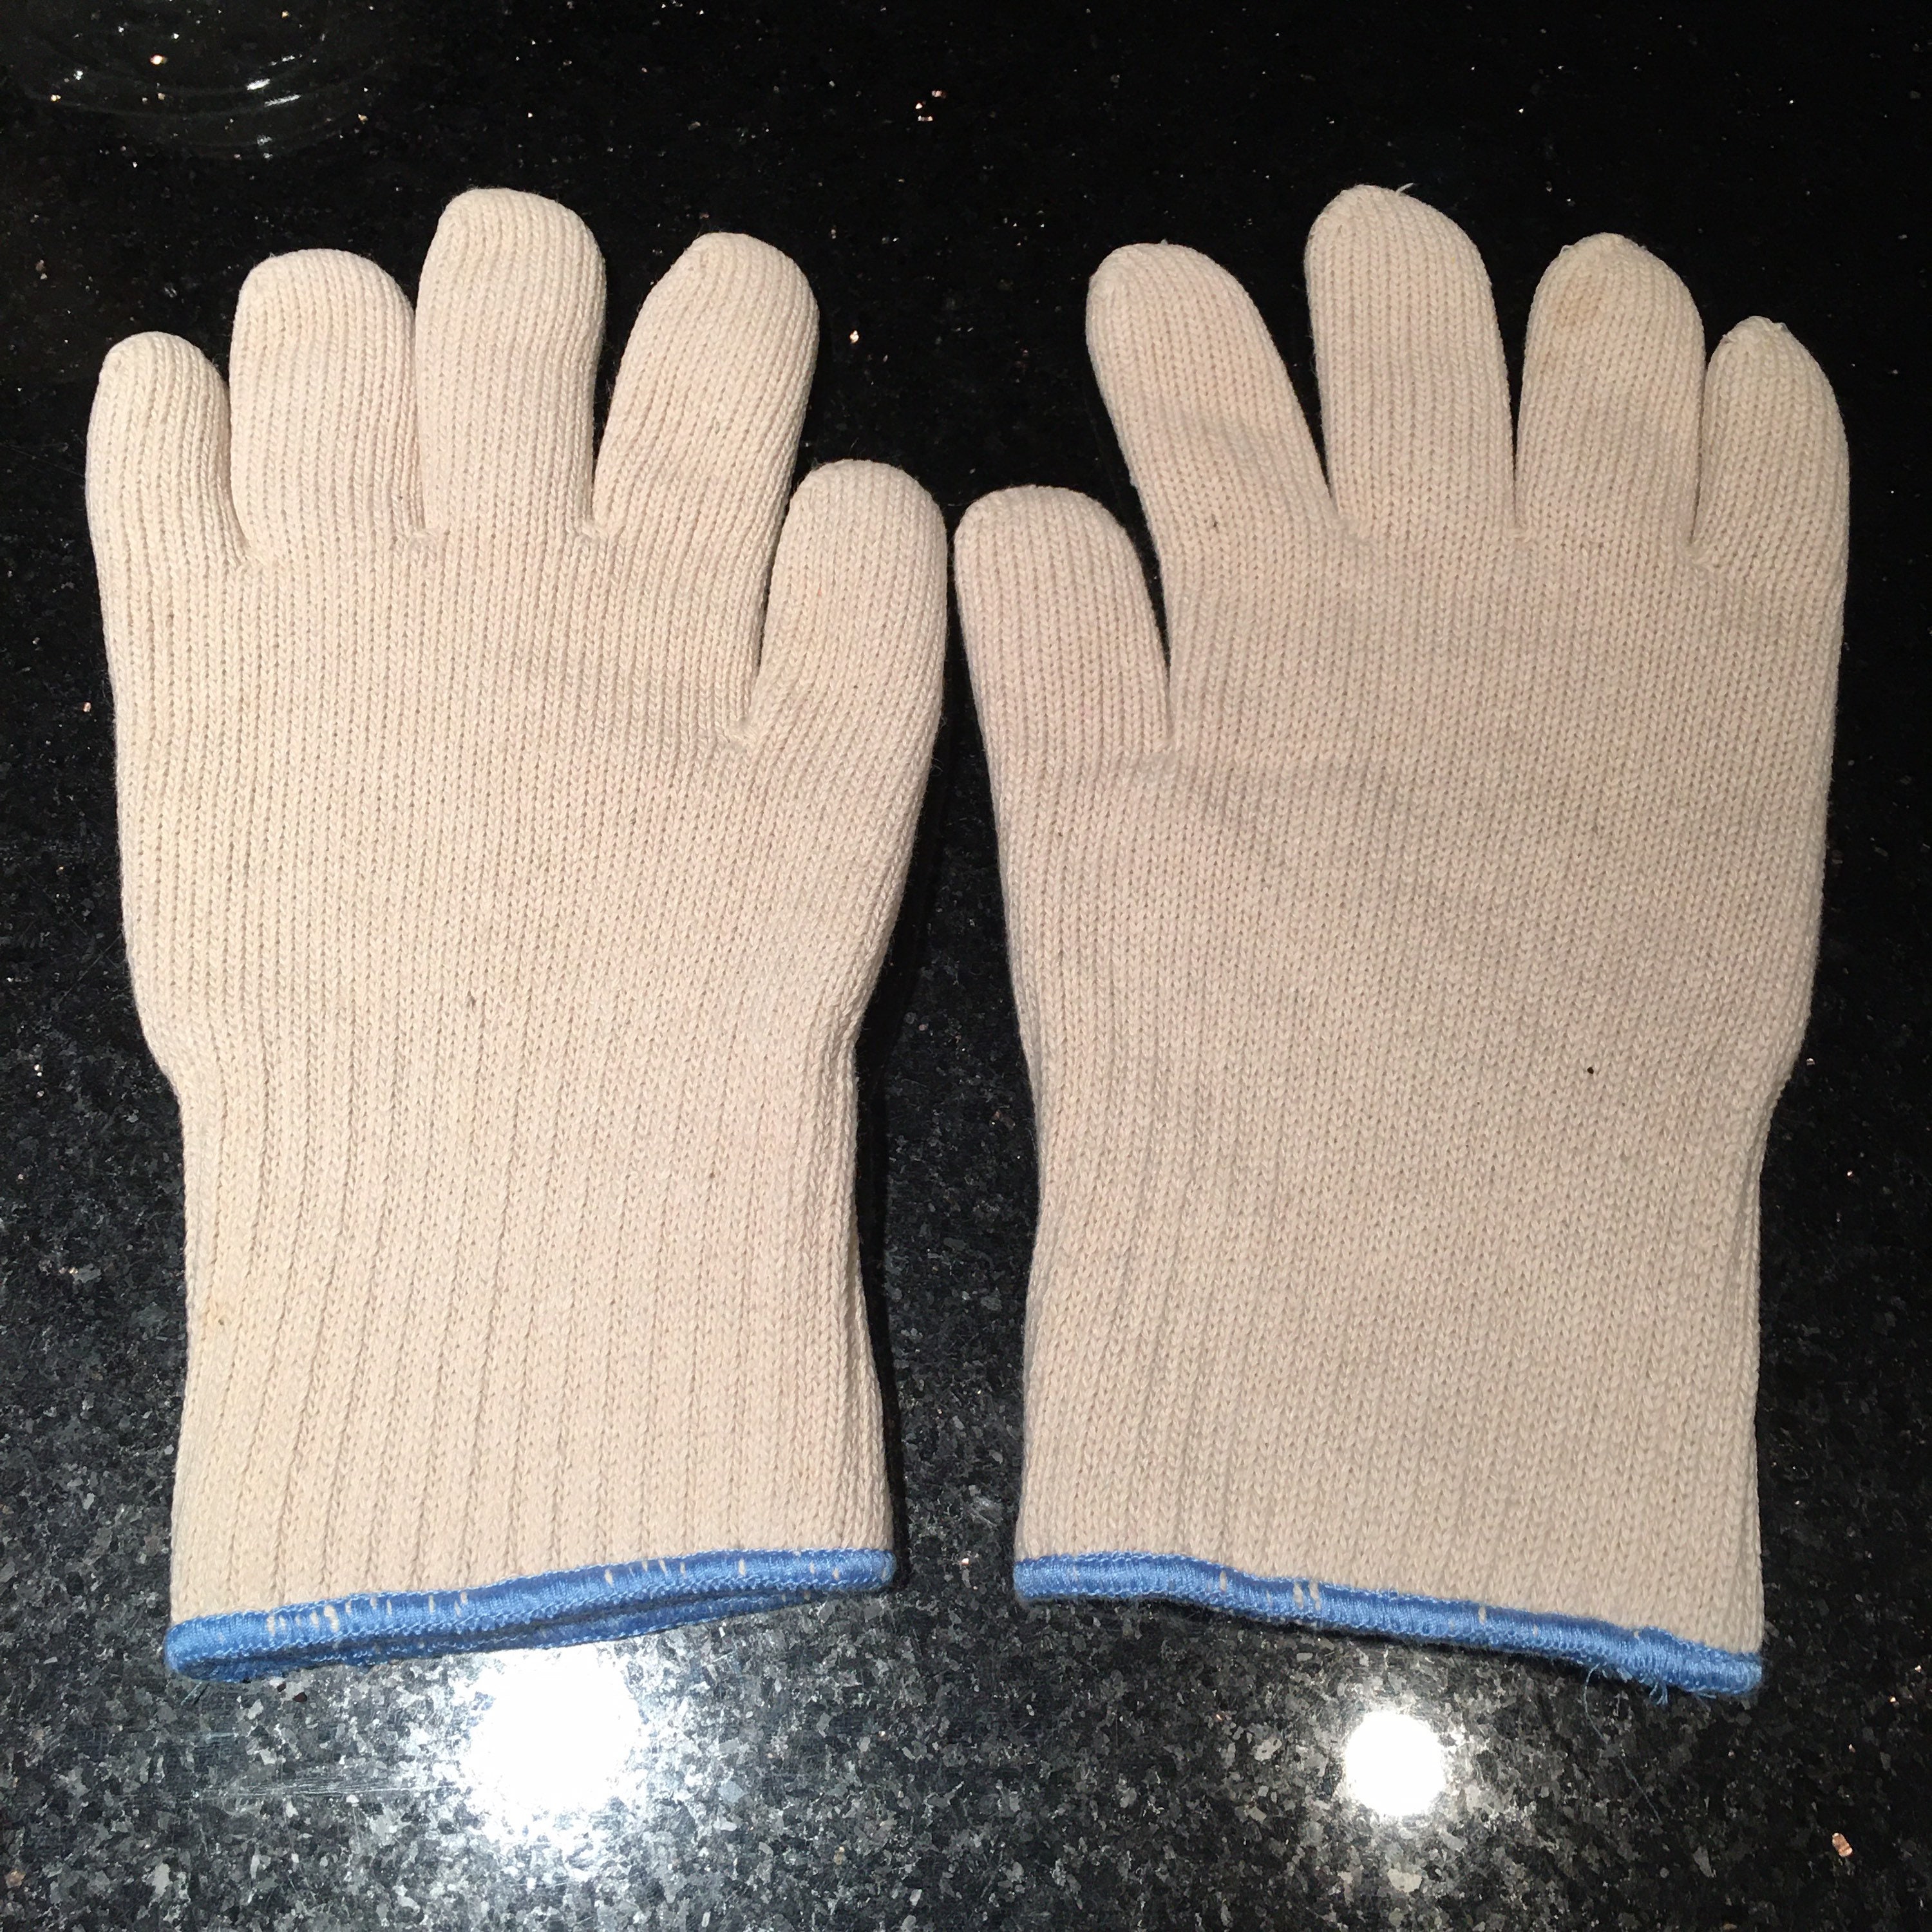 Retro woven linen winter mittens Vintage 80s warm bulky unusual work gloves with cotton batting lining Accessories Gloves & Mittens Gardening & Work Gloves 